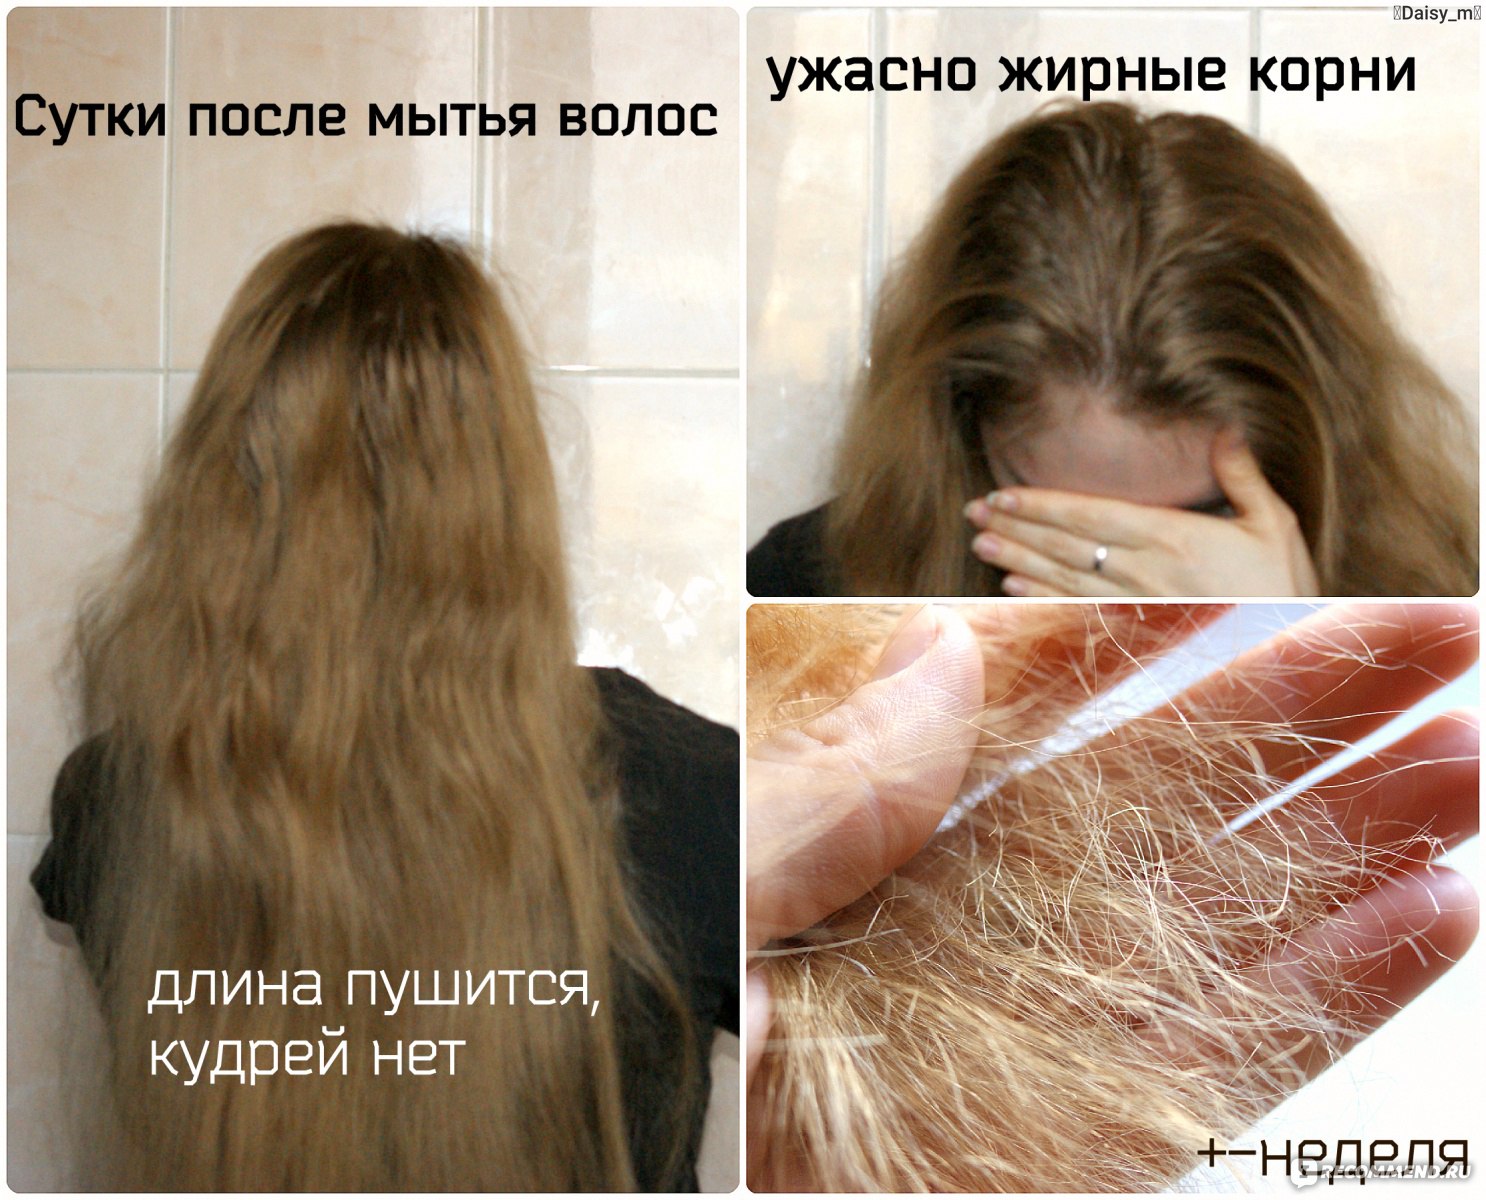 Сильно жирнятся волосы. Волосы после помывки. Волосы после мытья. Сальные волосы. Волосы после мытья головы.